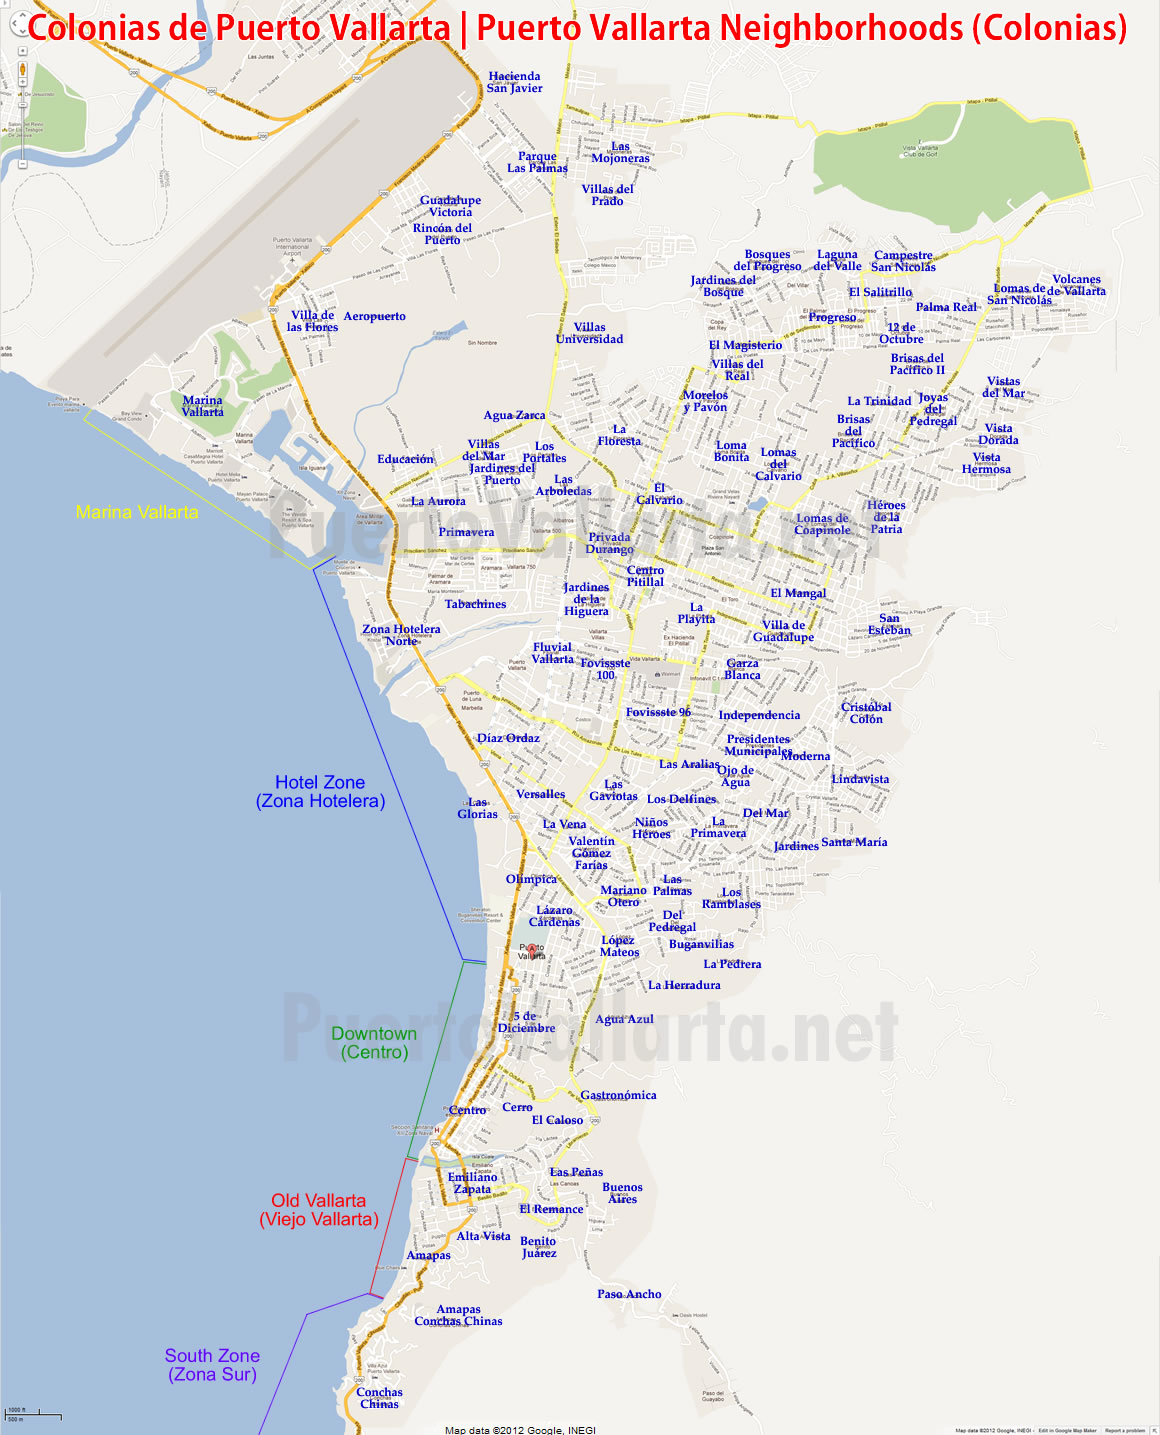 Colonias de Puerto Vallarta (barrios)